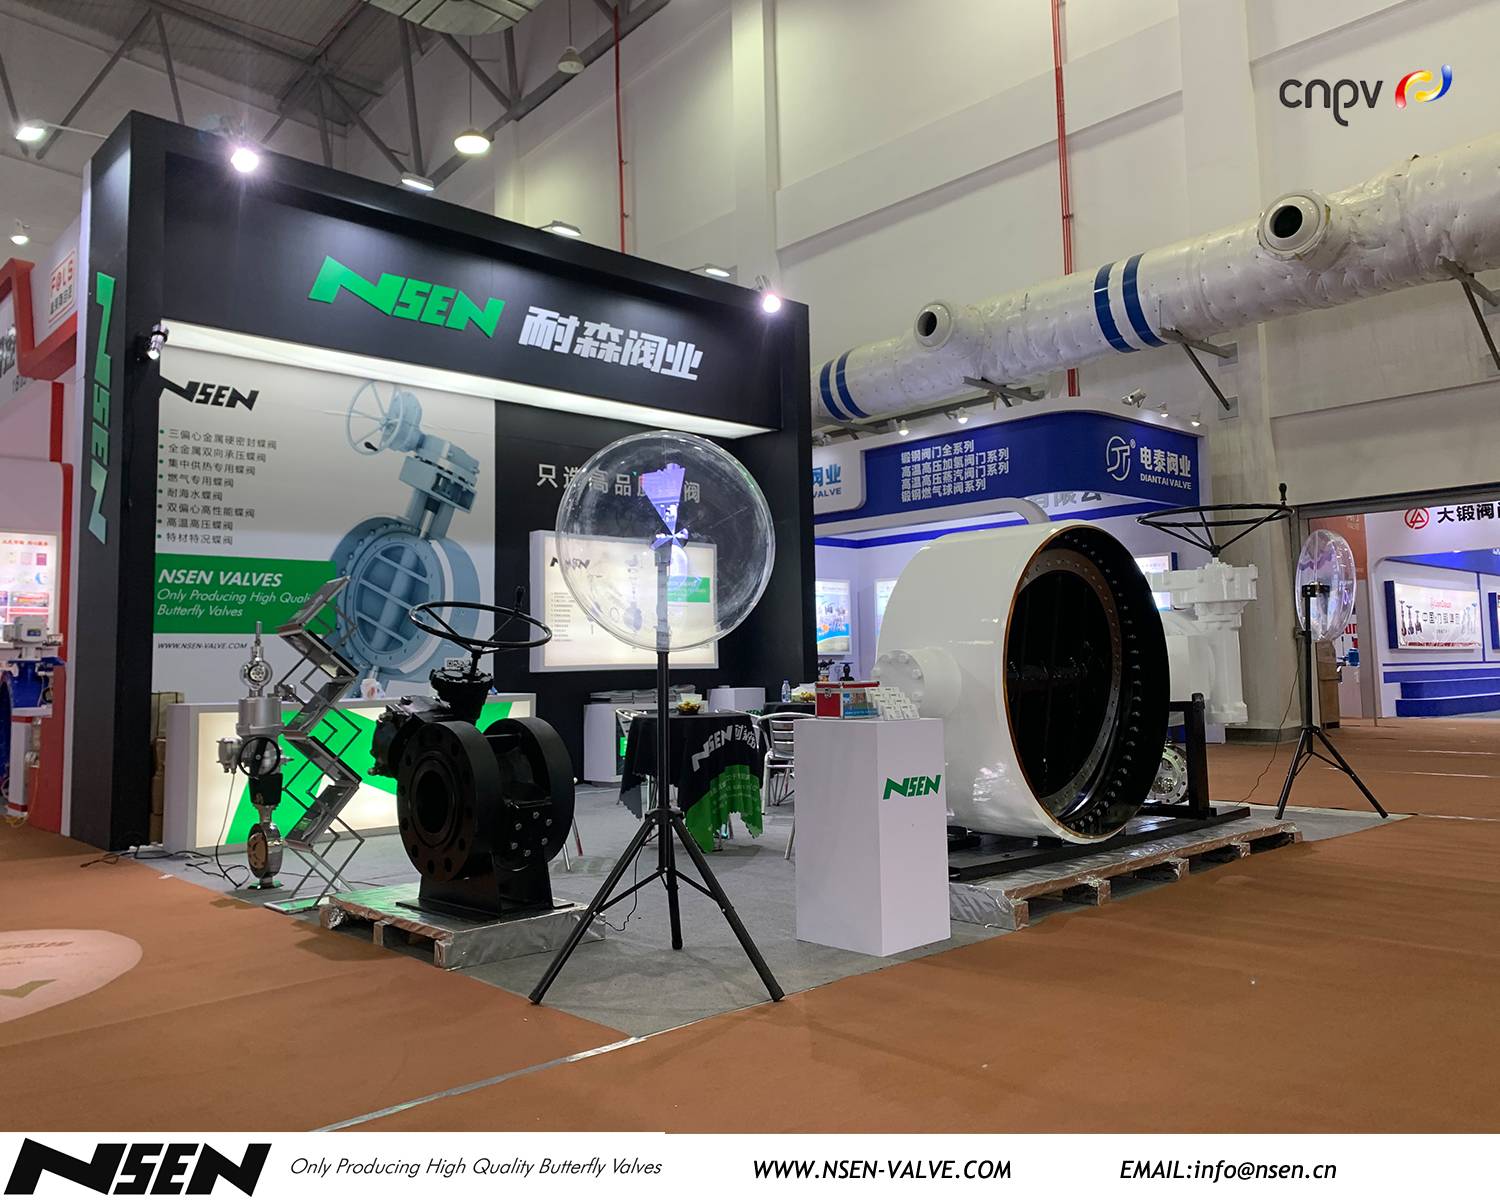 NSEN-ventil deltar på CNPV 2020-stand 1B05